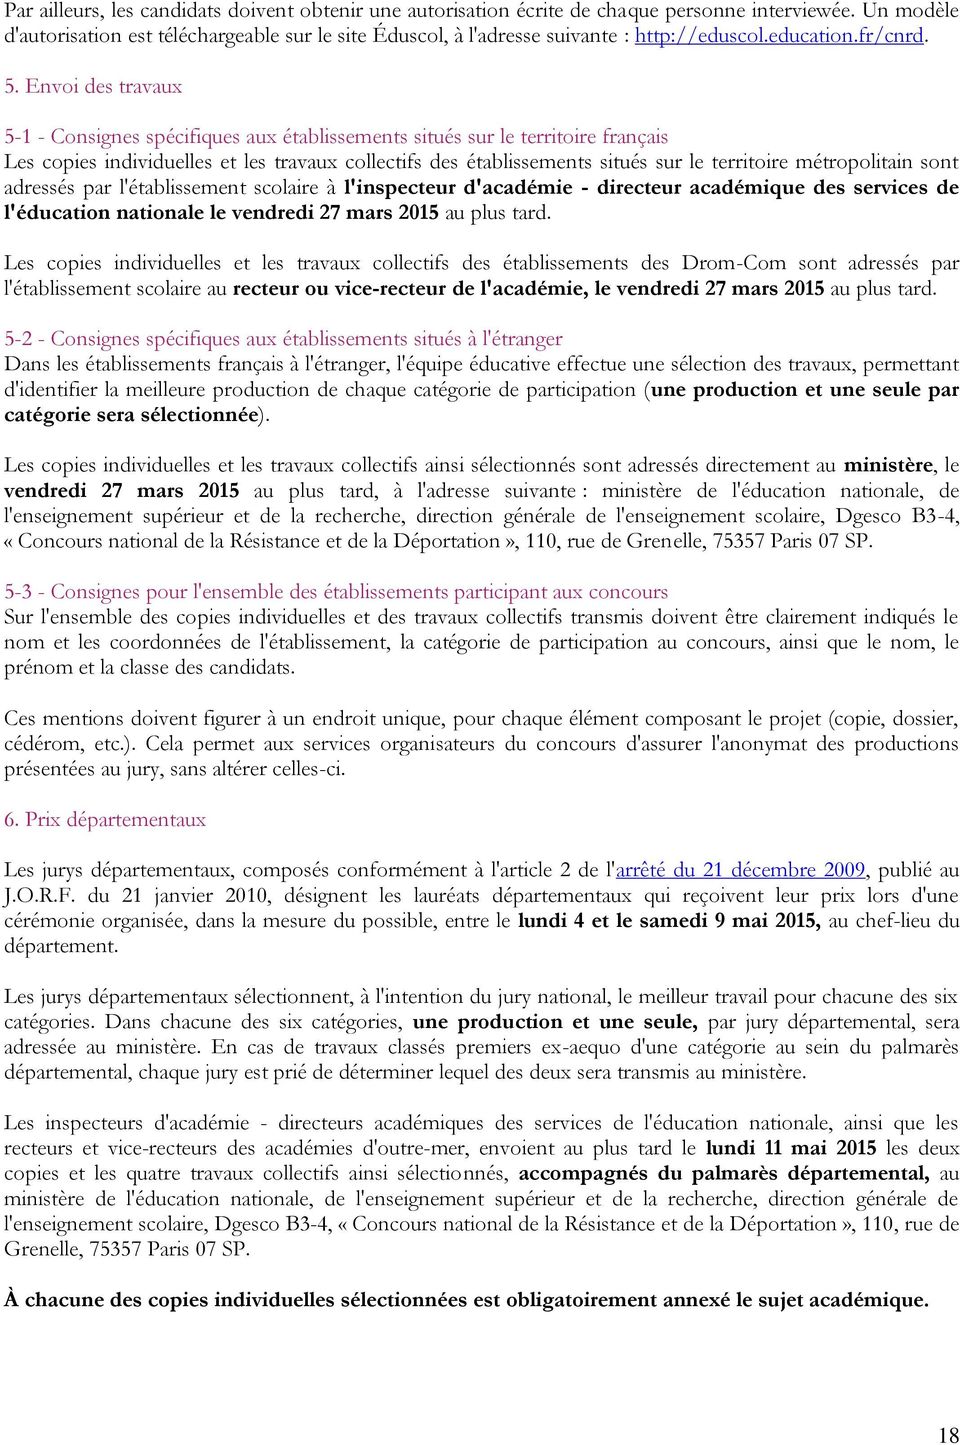 Envoi des travaux 5-1 - Consignes spécifiques aux établissements situés sur le territoire français Les copies individuelles et les travaux collectifs des établissements situés sur le territoire